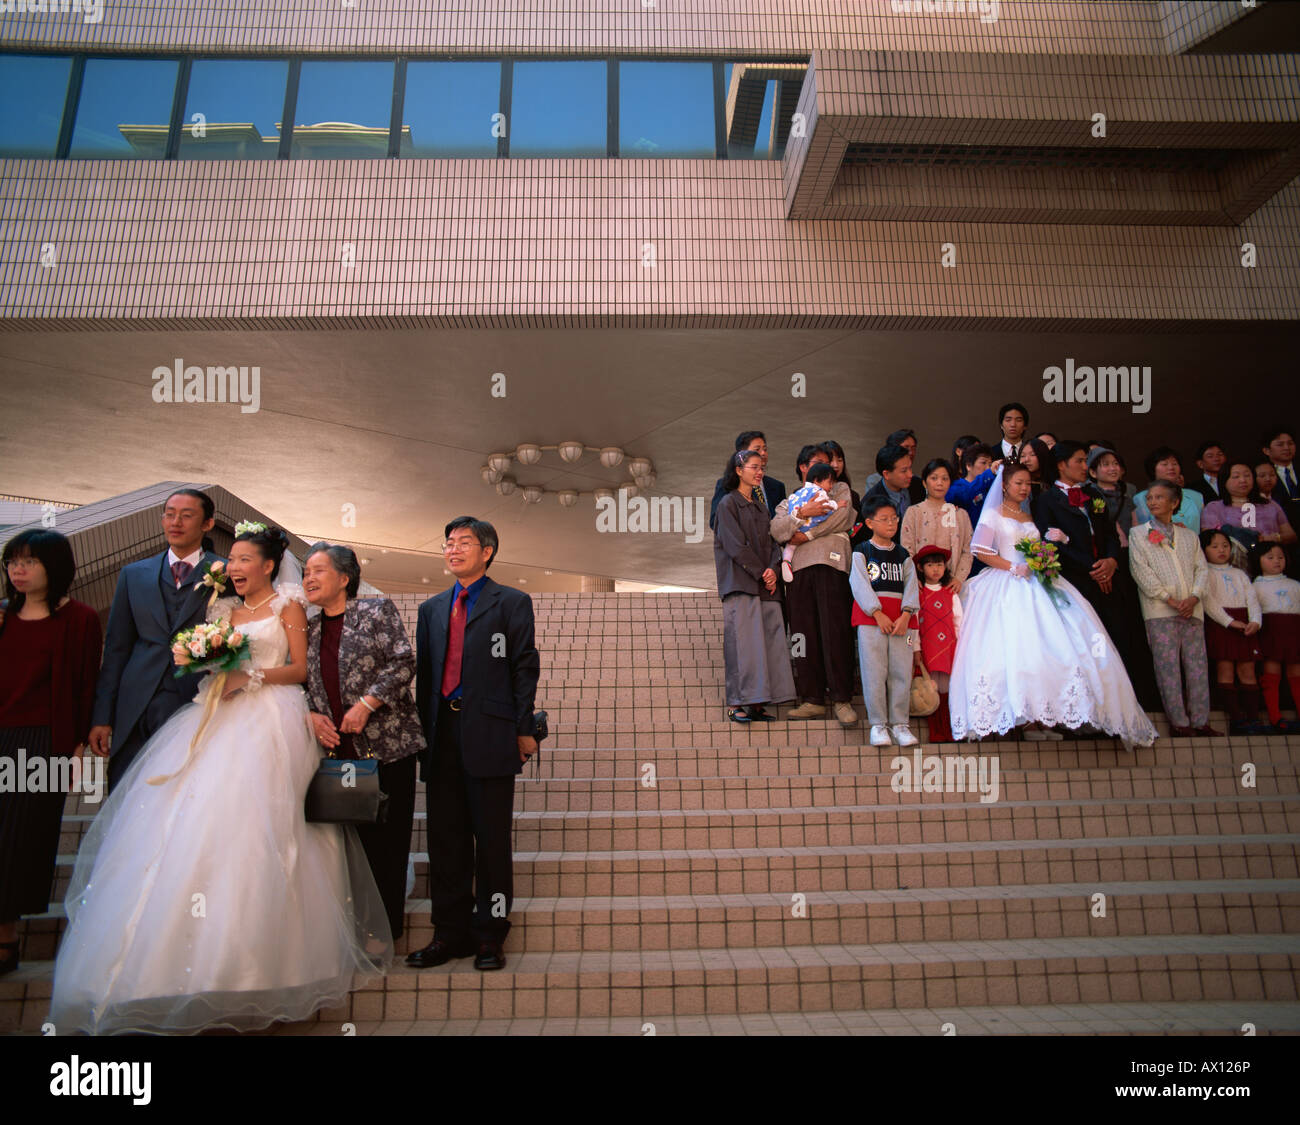 China, Hong Kong, Kowloon, Tsim Sha Tsui, Wedding Groups in front of the Hong Kong Cultural Centre Stock Photo